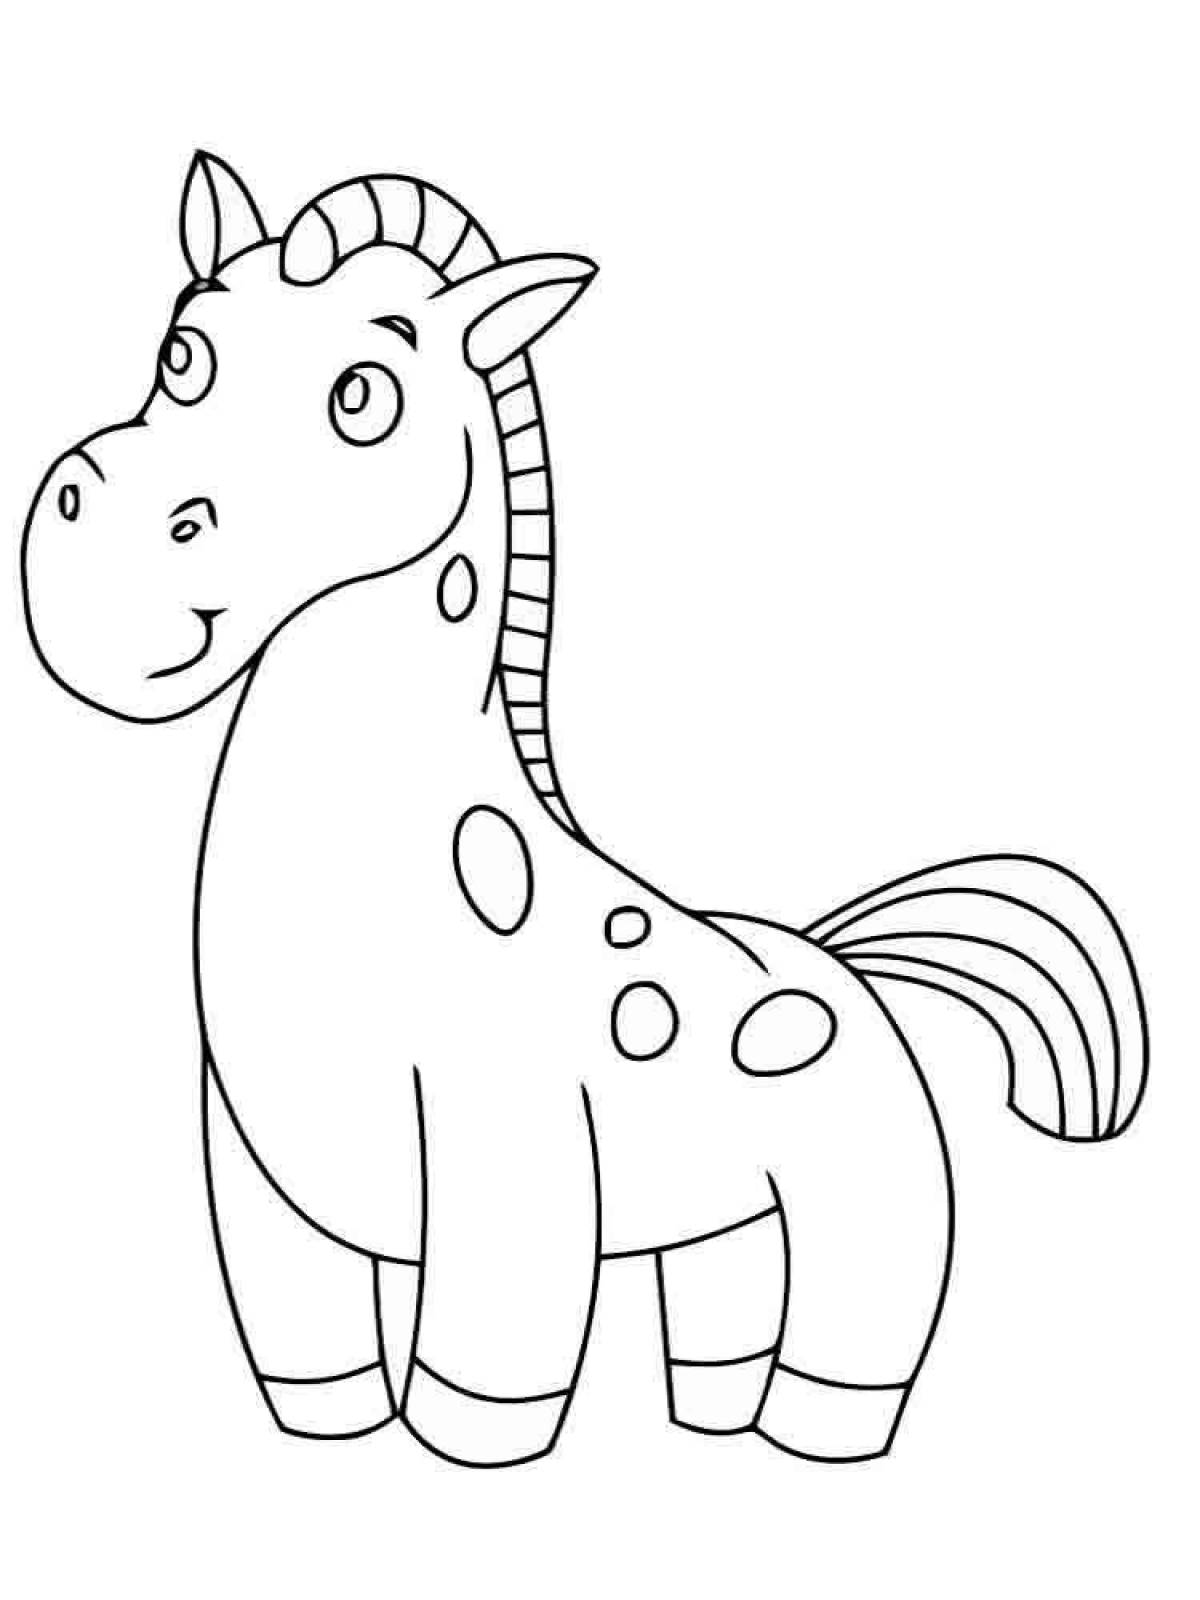 Лошадка для детей 5 лет. Раскраска. Лошадка. Лошадка раскраска для малышей. Лошадь раскраска для детей. Раскраска детская лошадка.